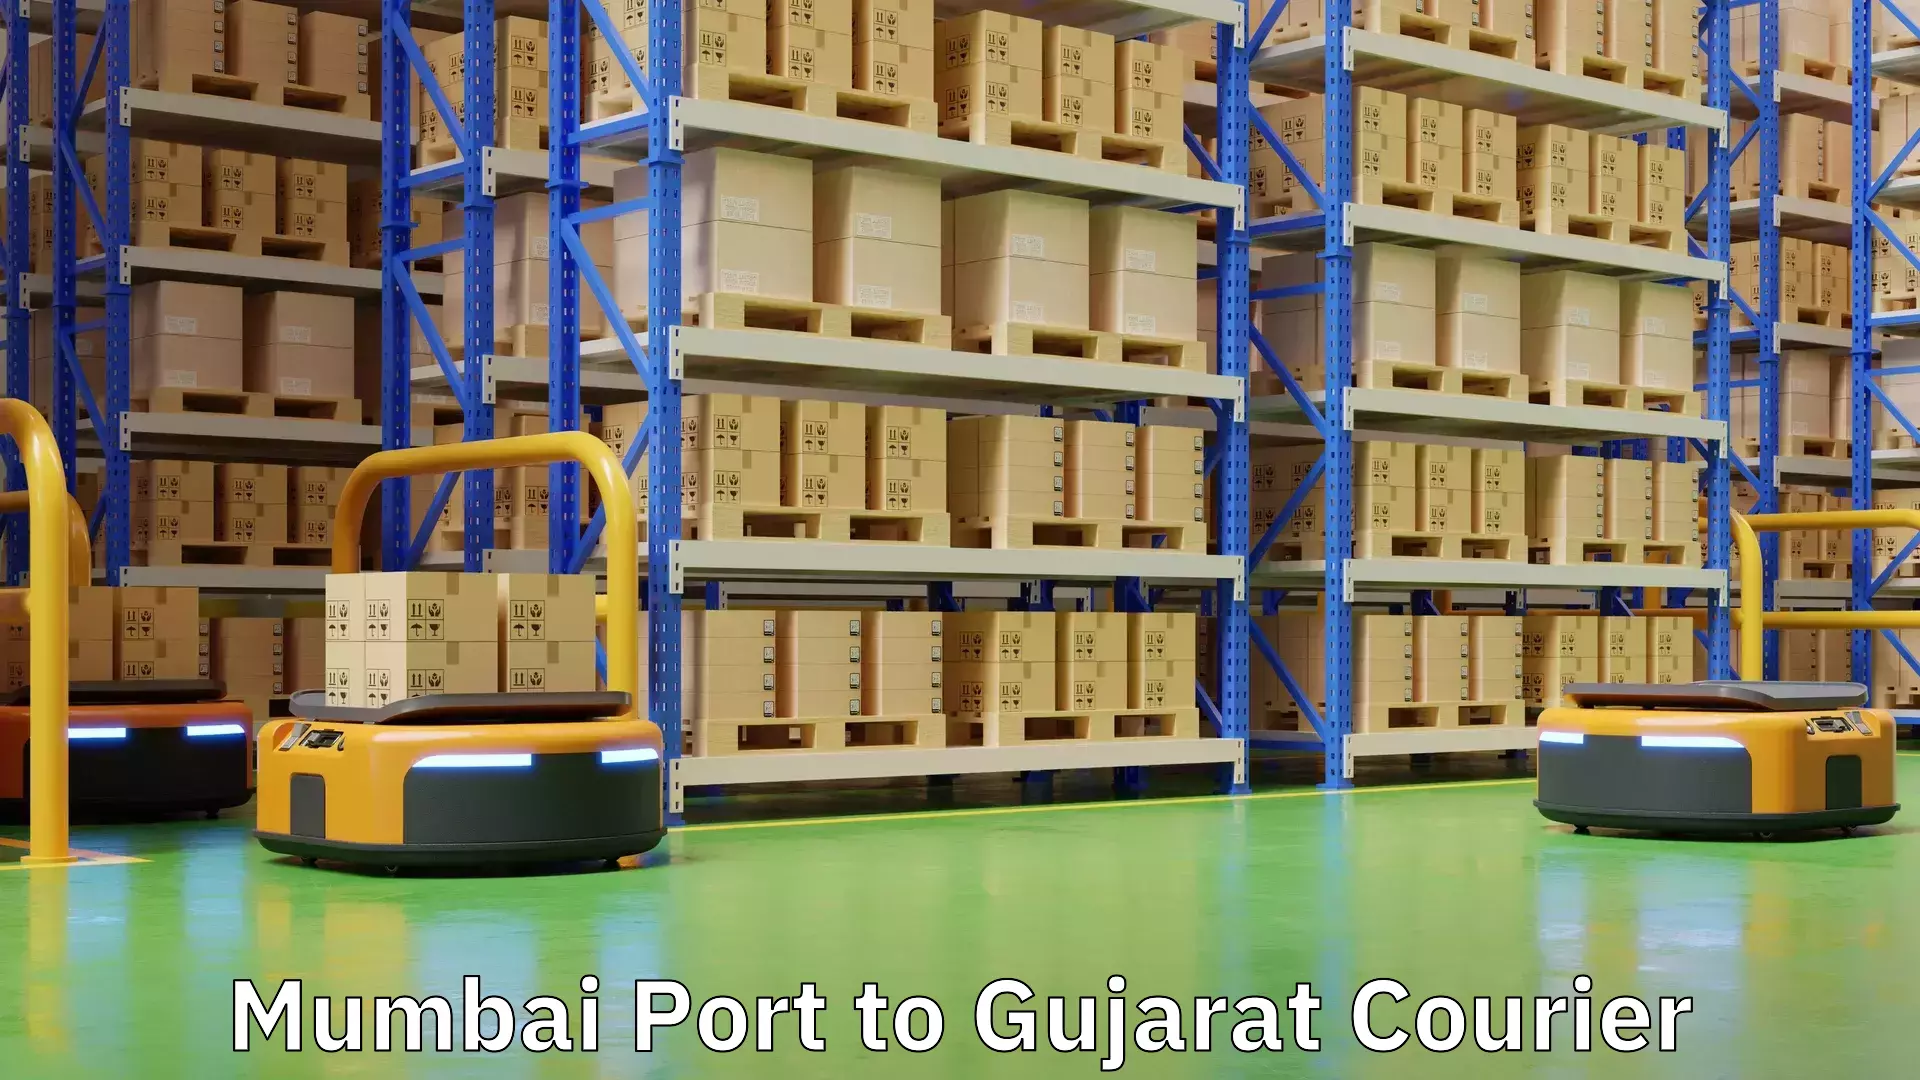 Premium courier services Mumbai Port to Gujarat